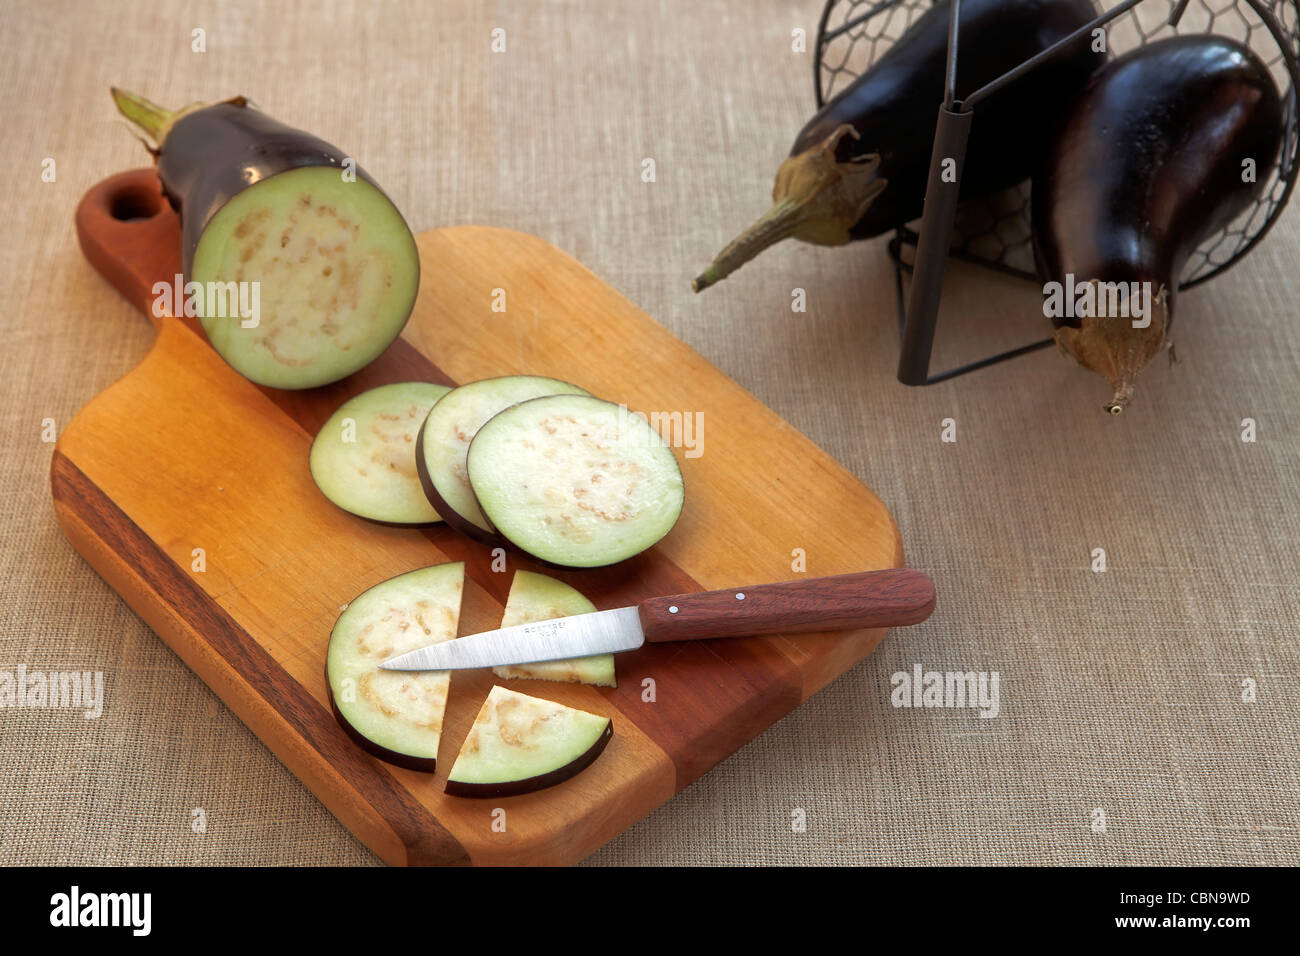 Ensemble, l'aubergine et couper avec un couteau sur une planche en bois Banque D'Images